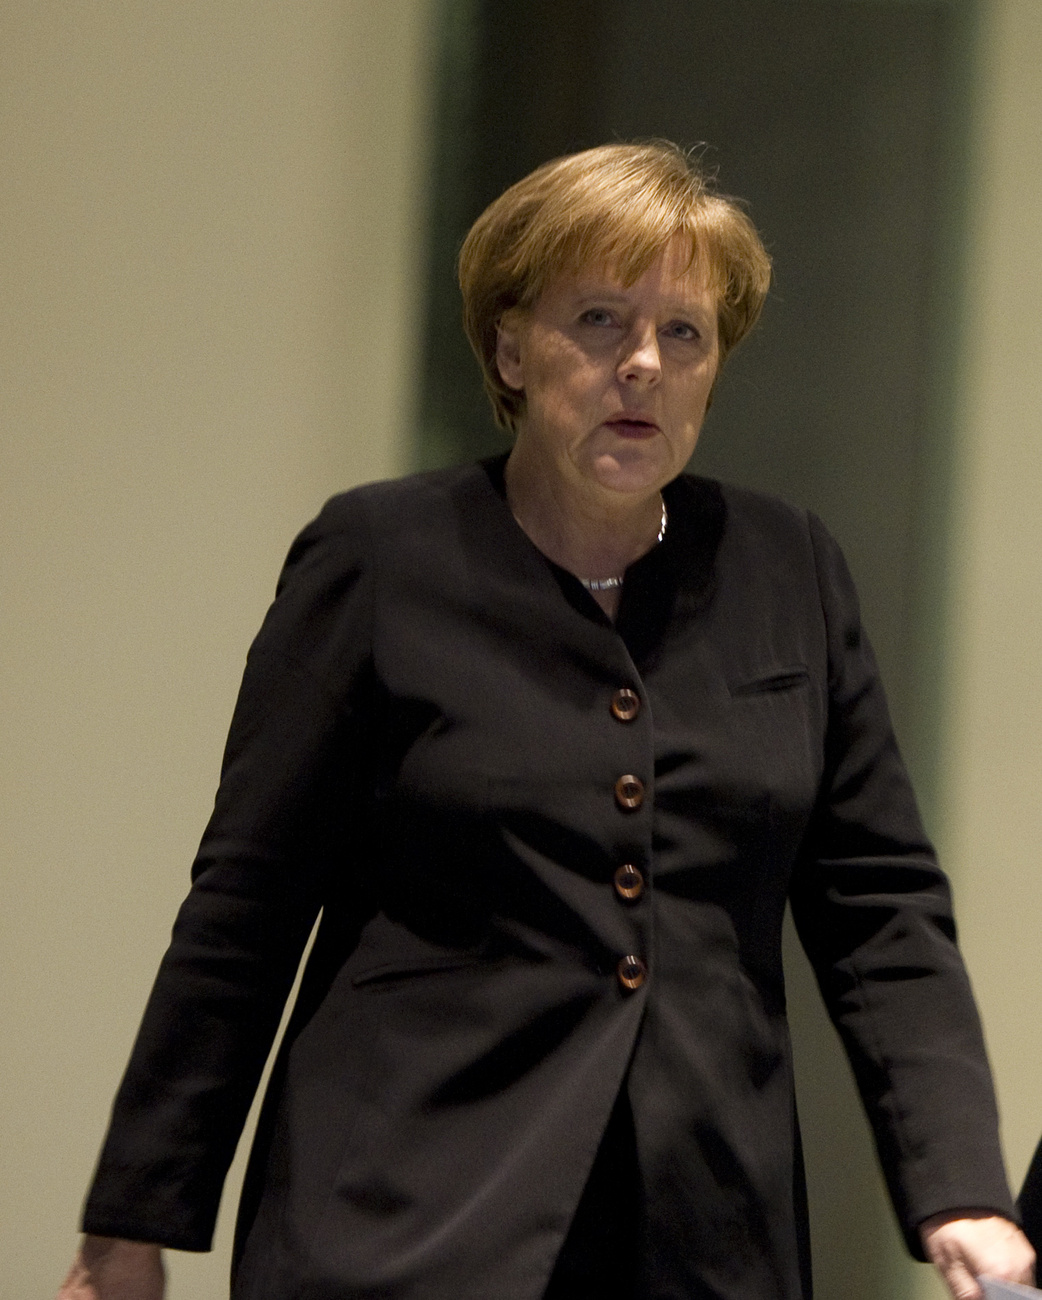 Angela Merkel német kancellár nagyon ijesztőnek nevezte Kadhafi beszédét, elsősorban azért, mert szerinte a líbiai vezető szinte hadat üzent a saját népének